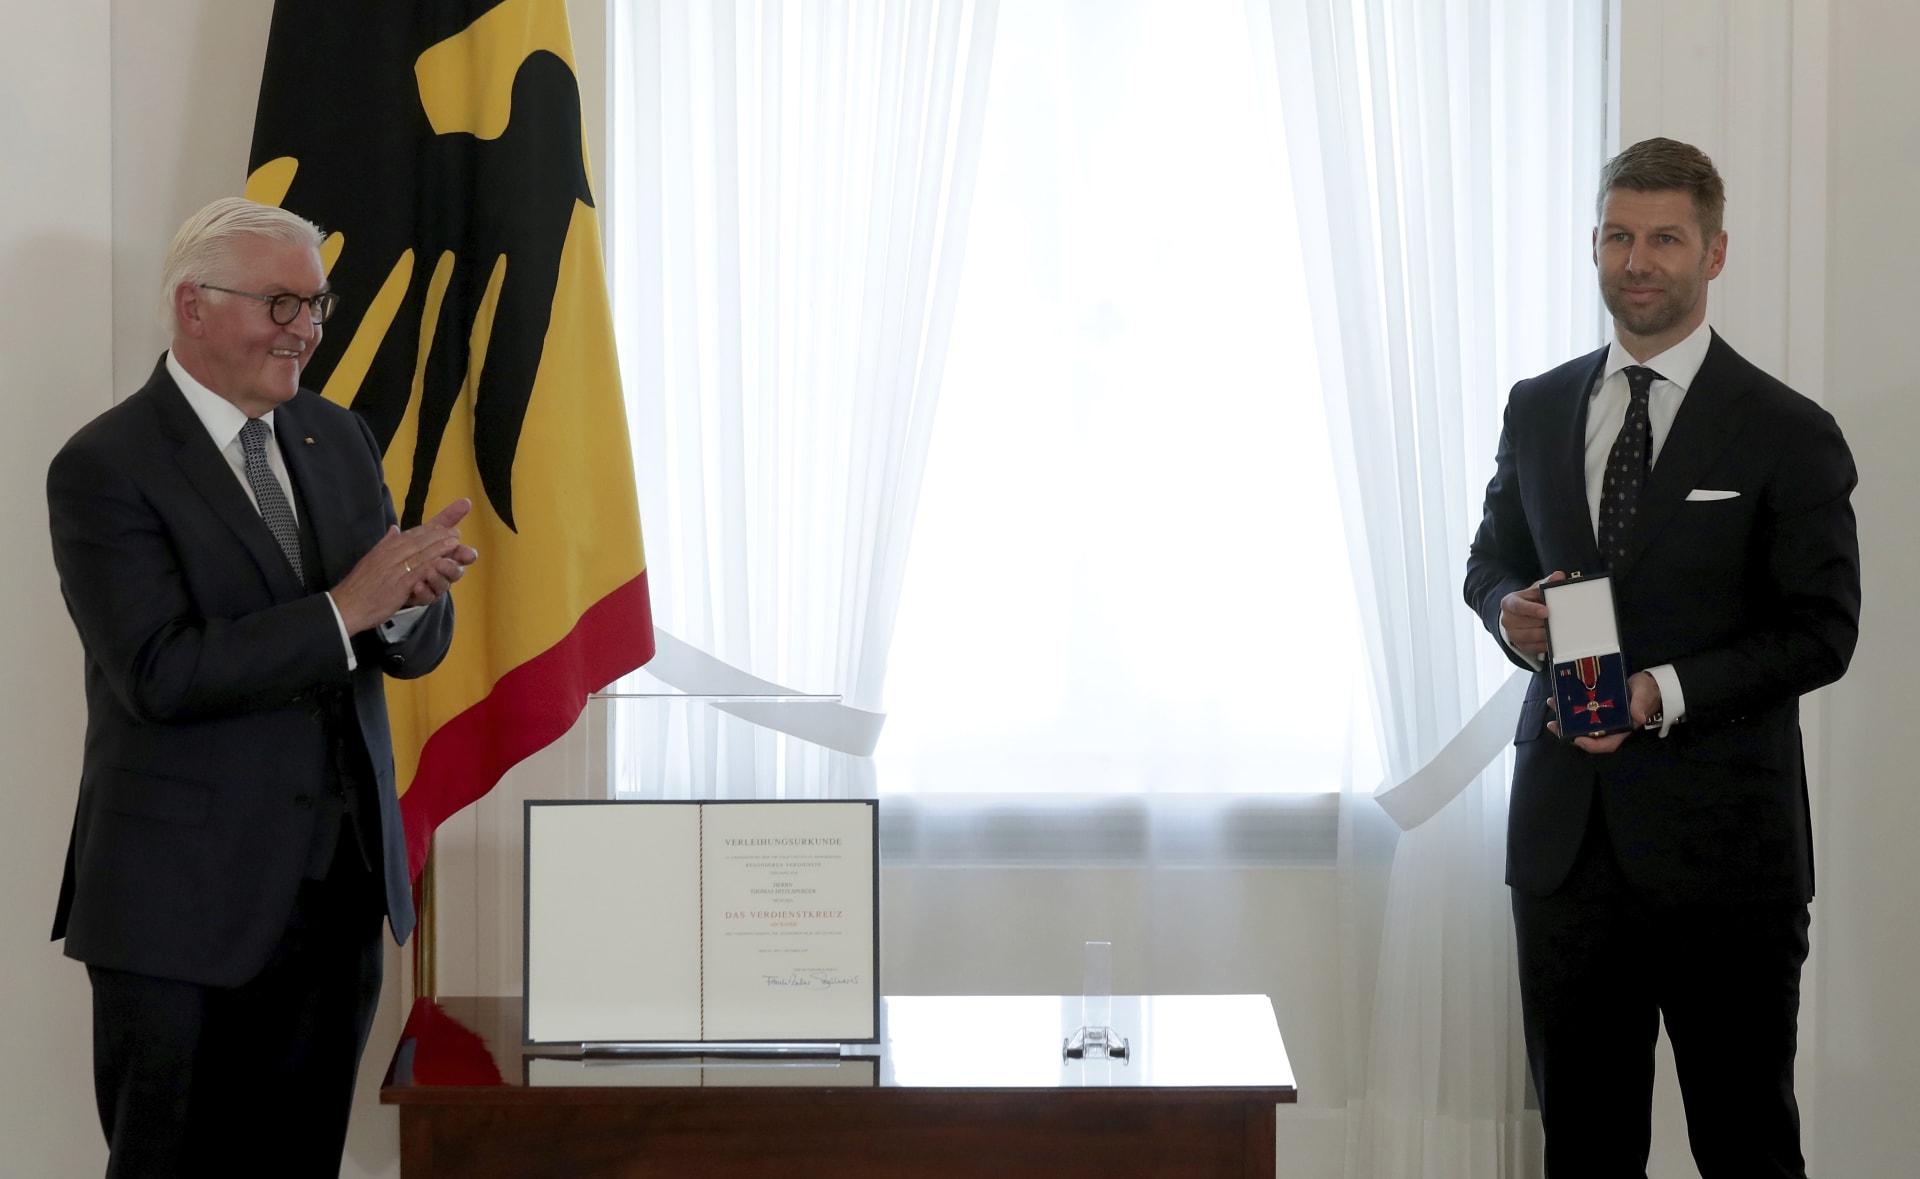 Thomas Hitzlsperger (vpravo) pózuje před zraky německého prezidenta Franka-Waltera Steinmeiera po převzetí státního vyznamenání.